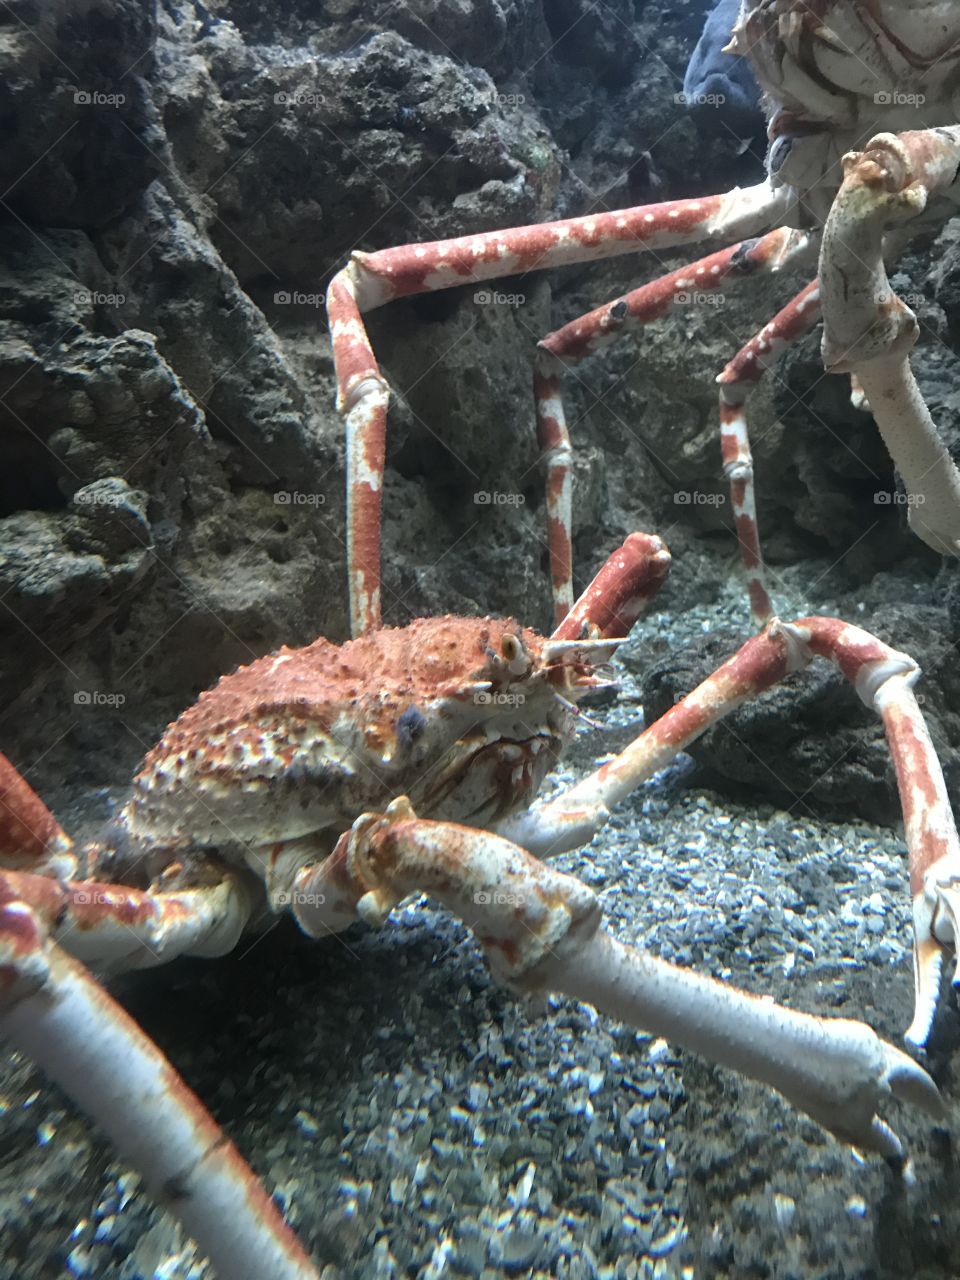 Crabs underwater 